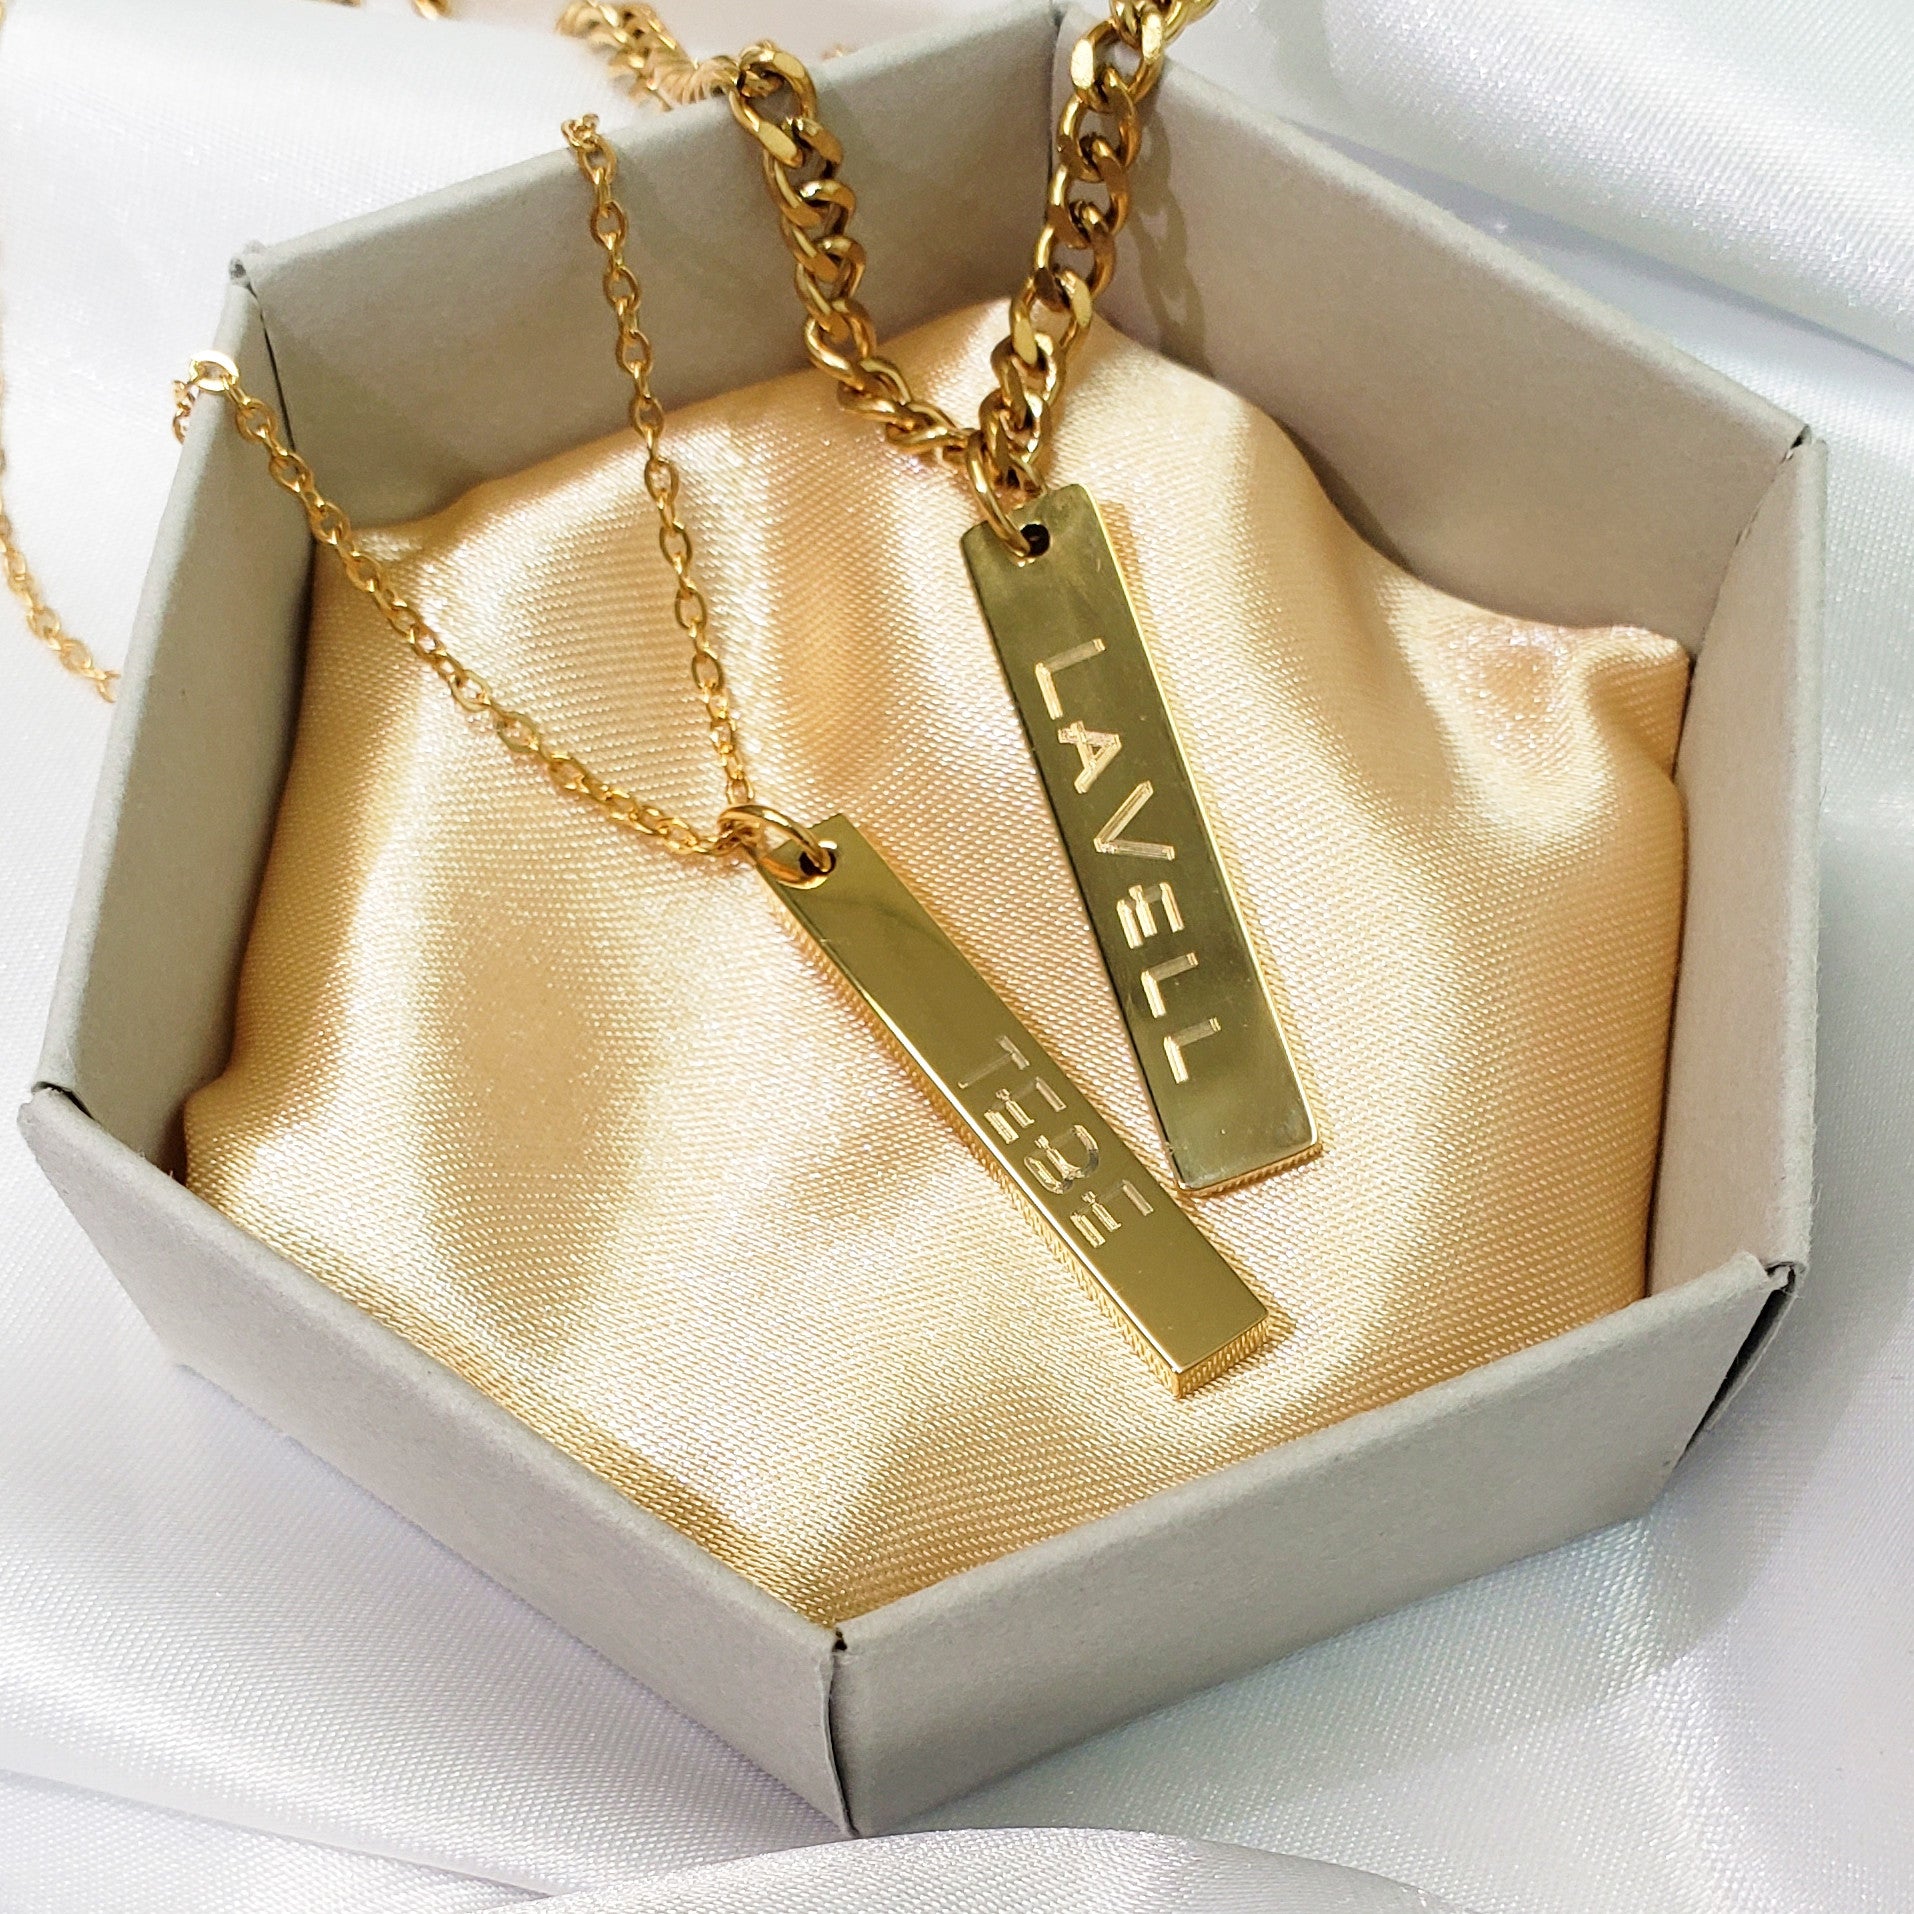 ASOS DESIGN necklace with engraved bar pendant in silver tone | ASOS